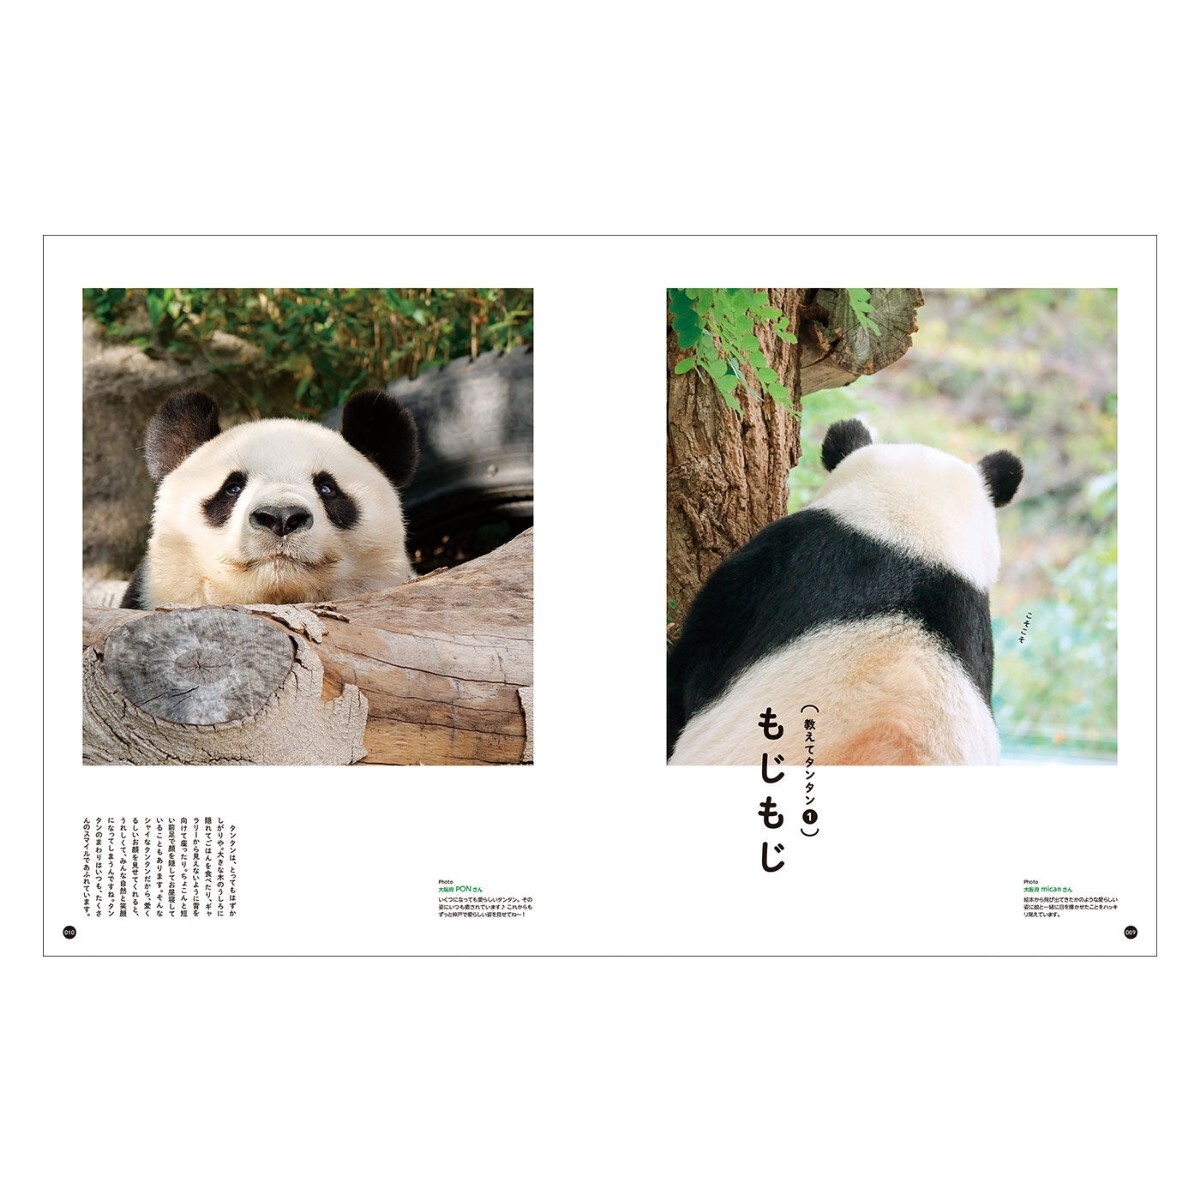 タンタン 王子動物園 神戸市立動物園のなパンダ / シャンシャン シャオシャオ レイレイ パンダ Panda ジャイアントパンダの画像2